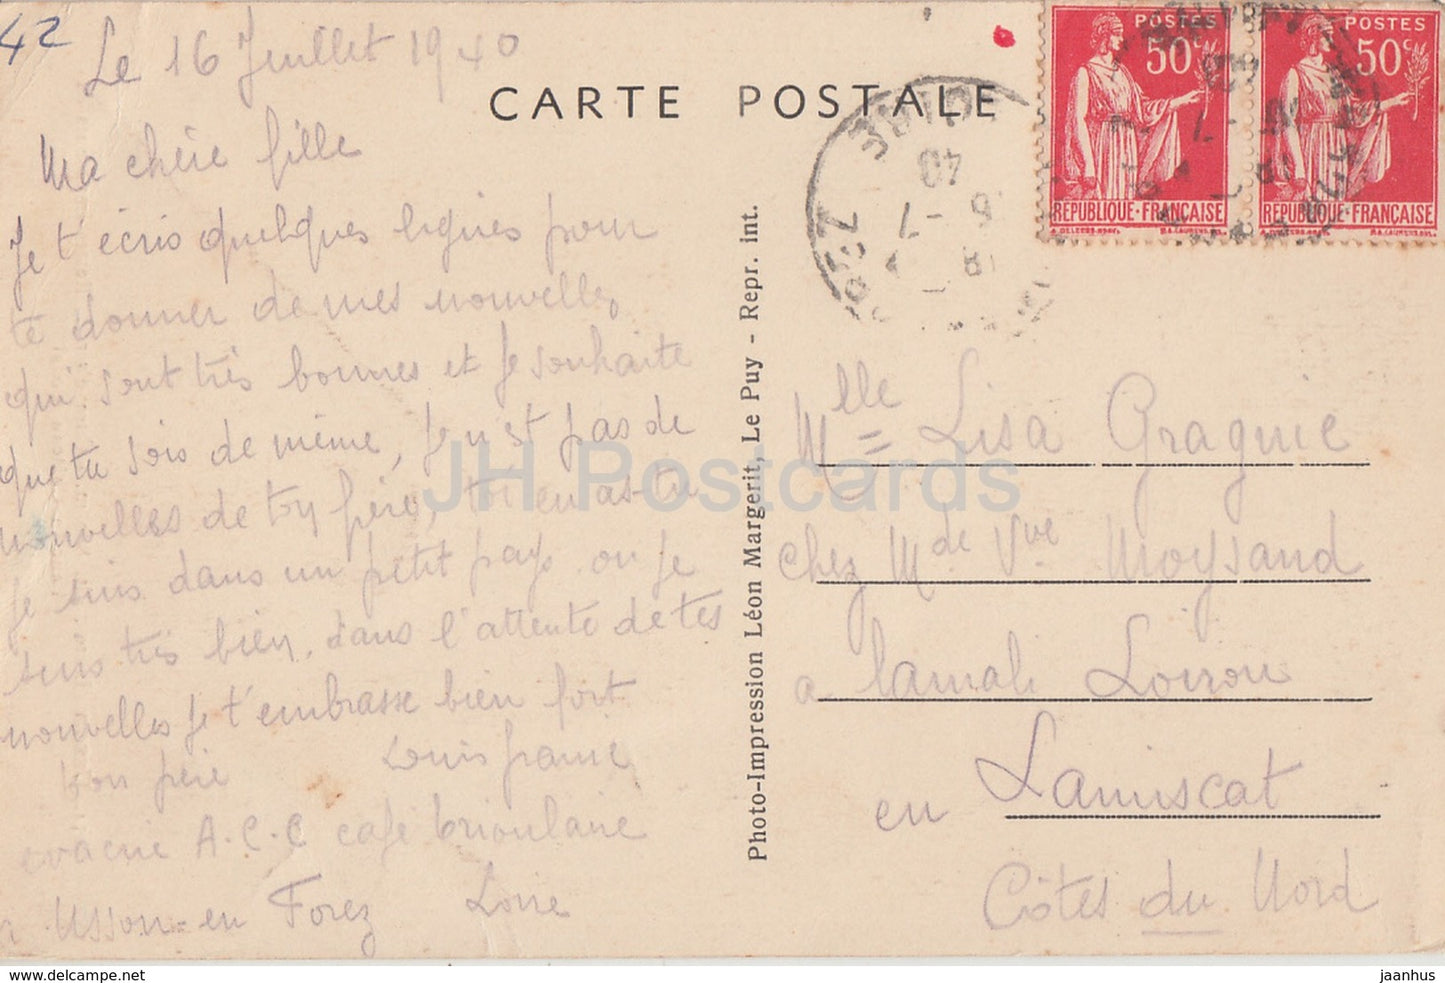 Usson - Cure d'air - Restes imposants de l'ancien Chateau feodal - Schloss - 3054 - alte Postkarte - 1940 - Frankreich - gebraucht